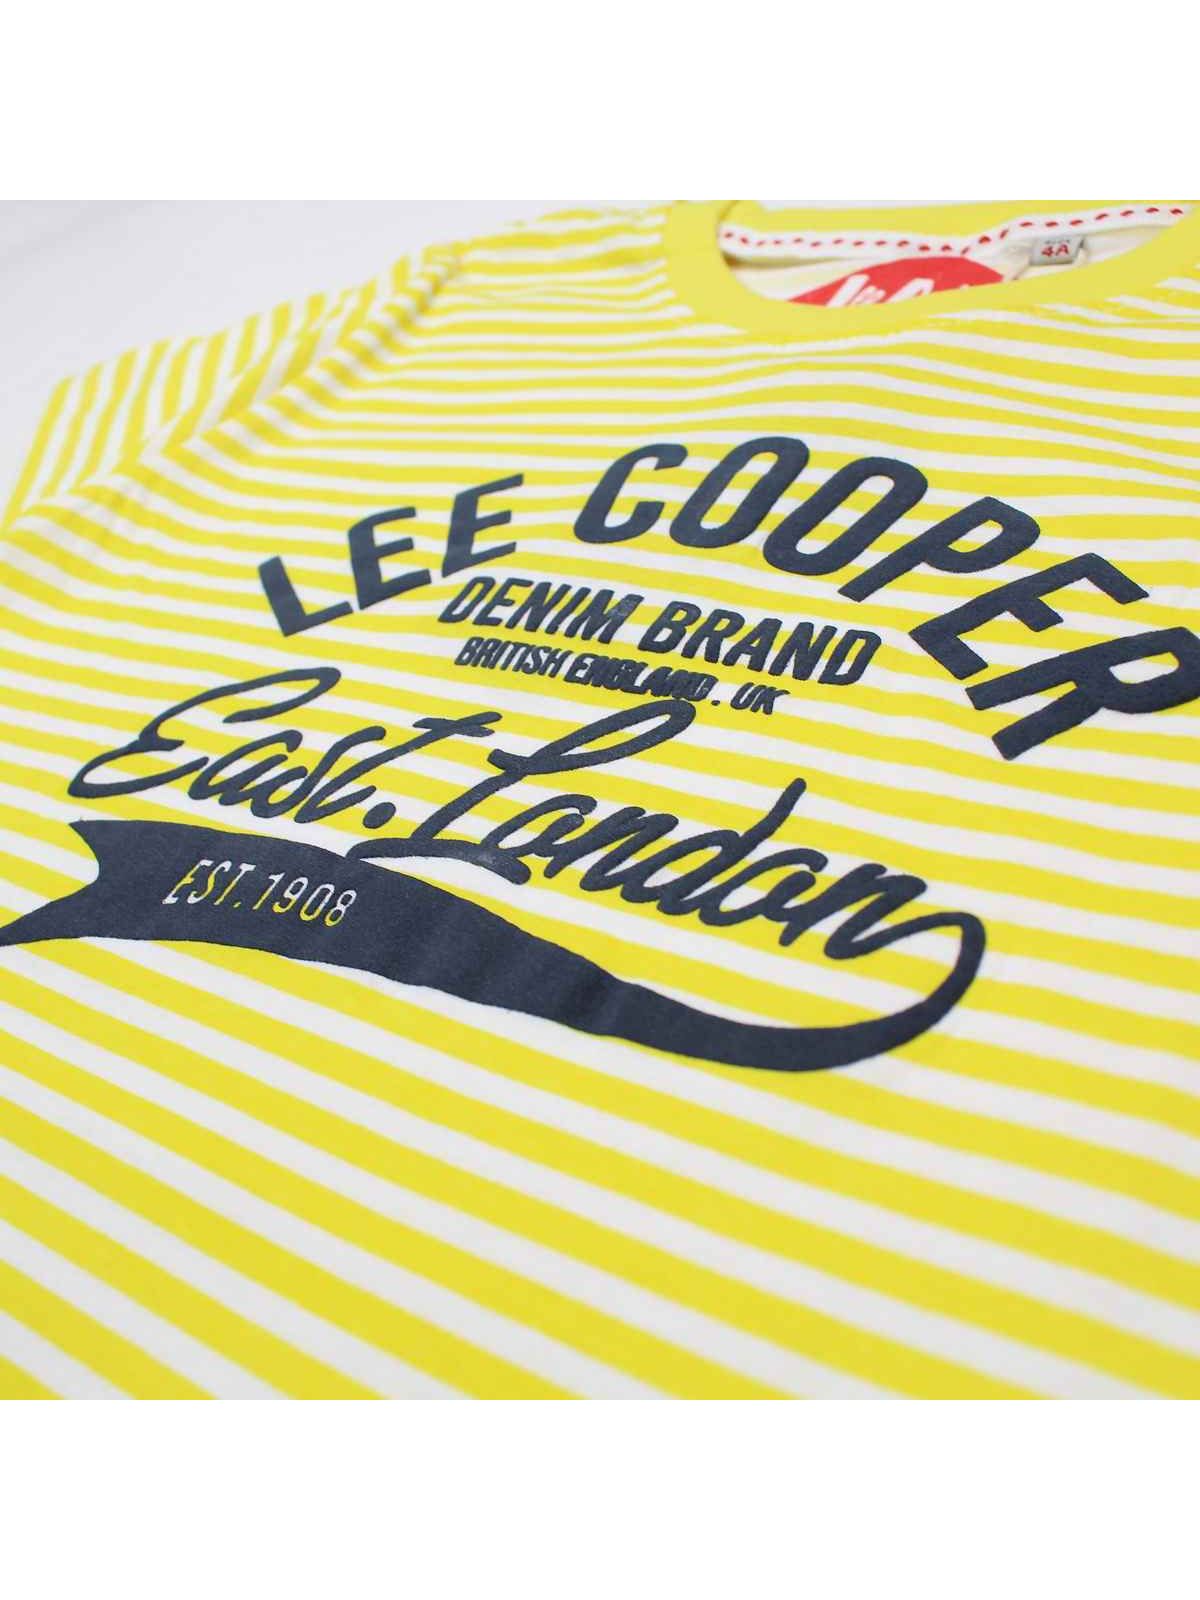 Lee Cooper Magliette con maniche corte